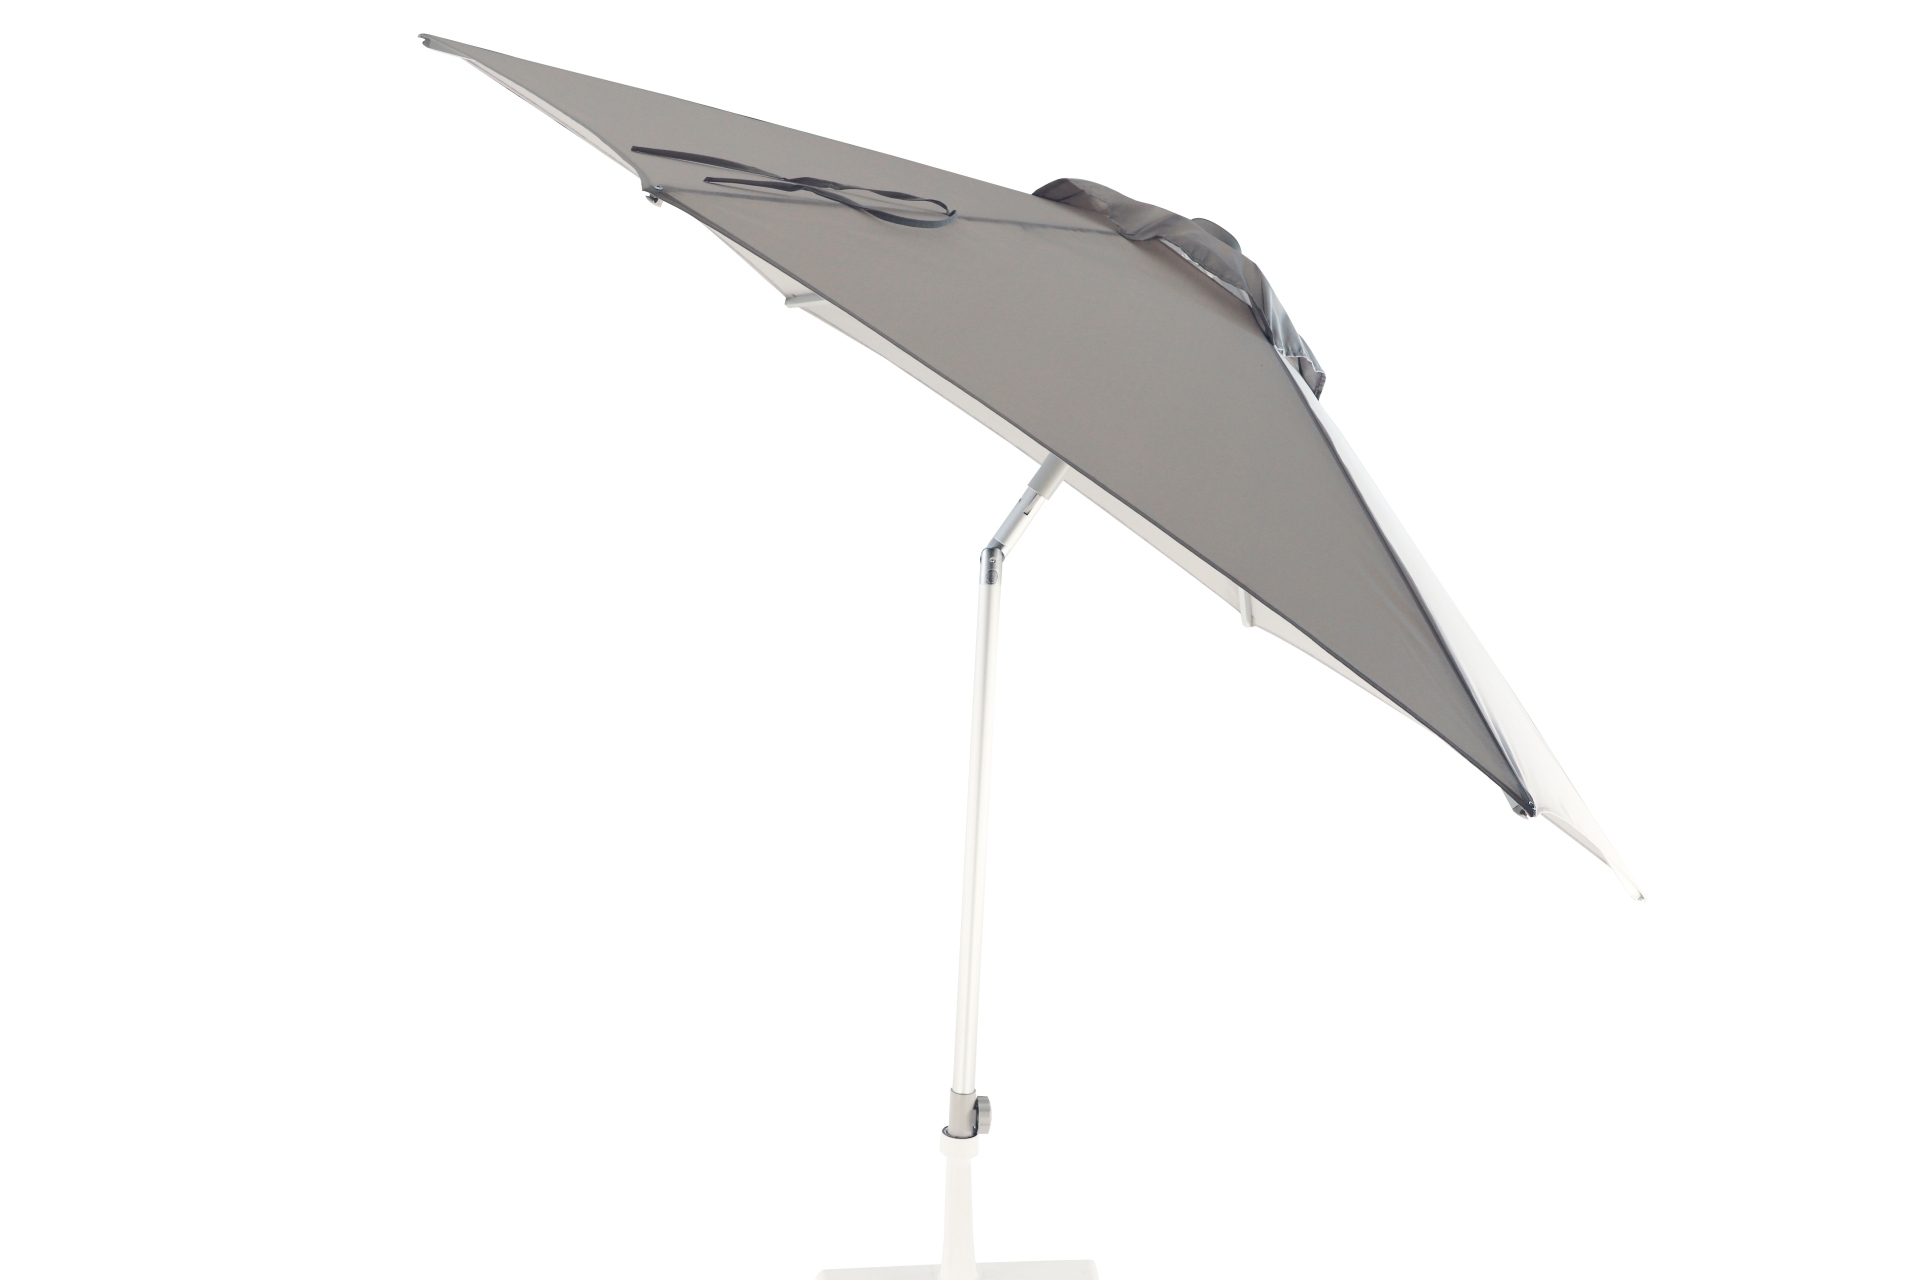 Der Sonnenschirm Elba überzeugt mit seinem modernen Design. Die Form des Schirms ist Rund und hat eine Größe von 250 cm. Designet wurde er von der Marke Jan Kurtz und hat die Farbe Hellgrau.